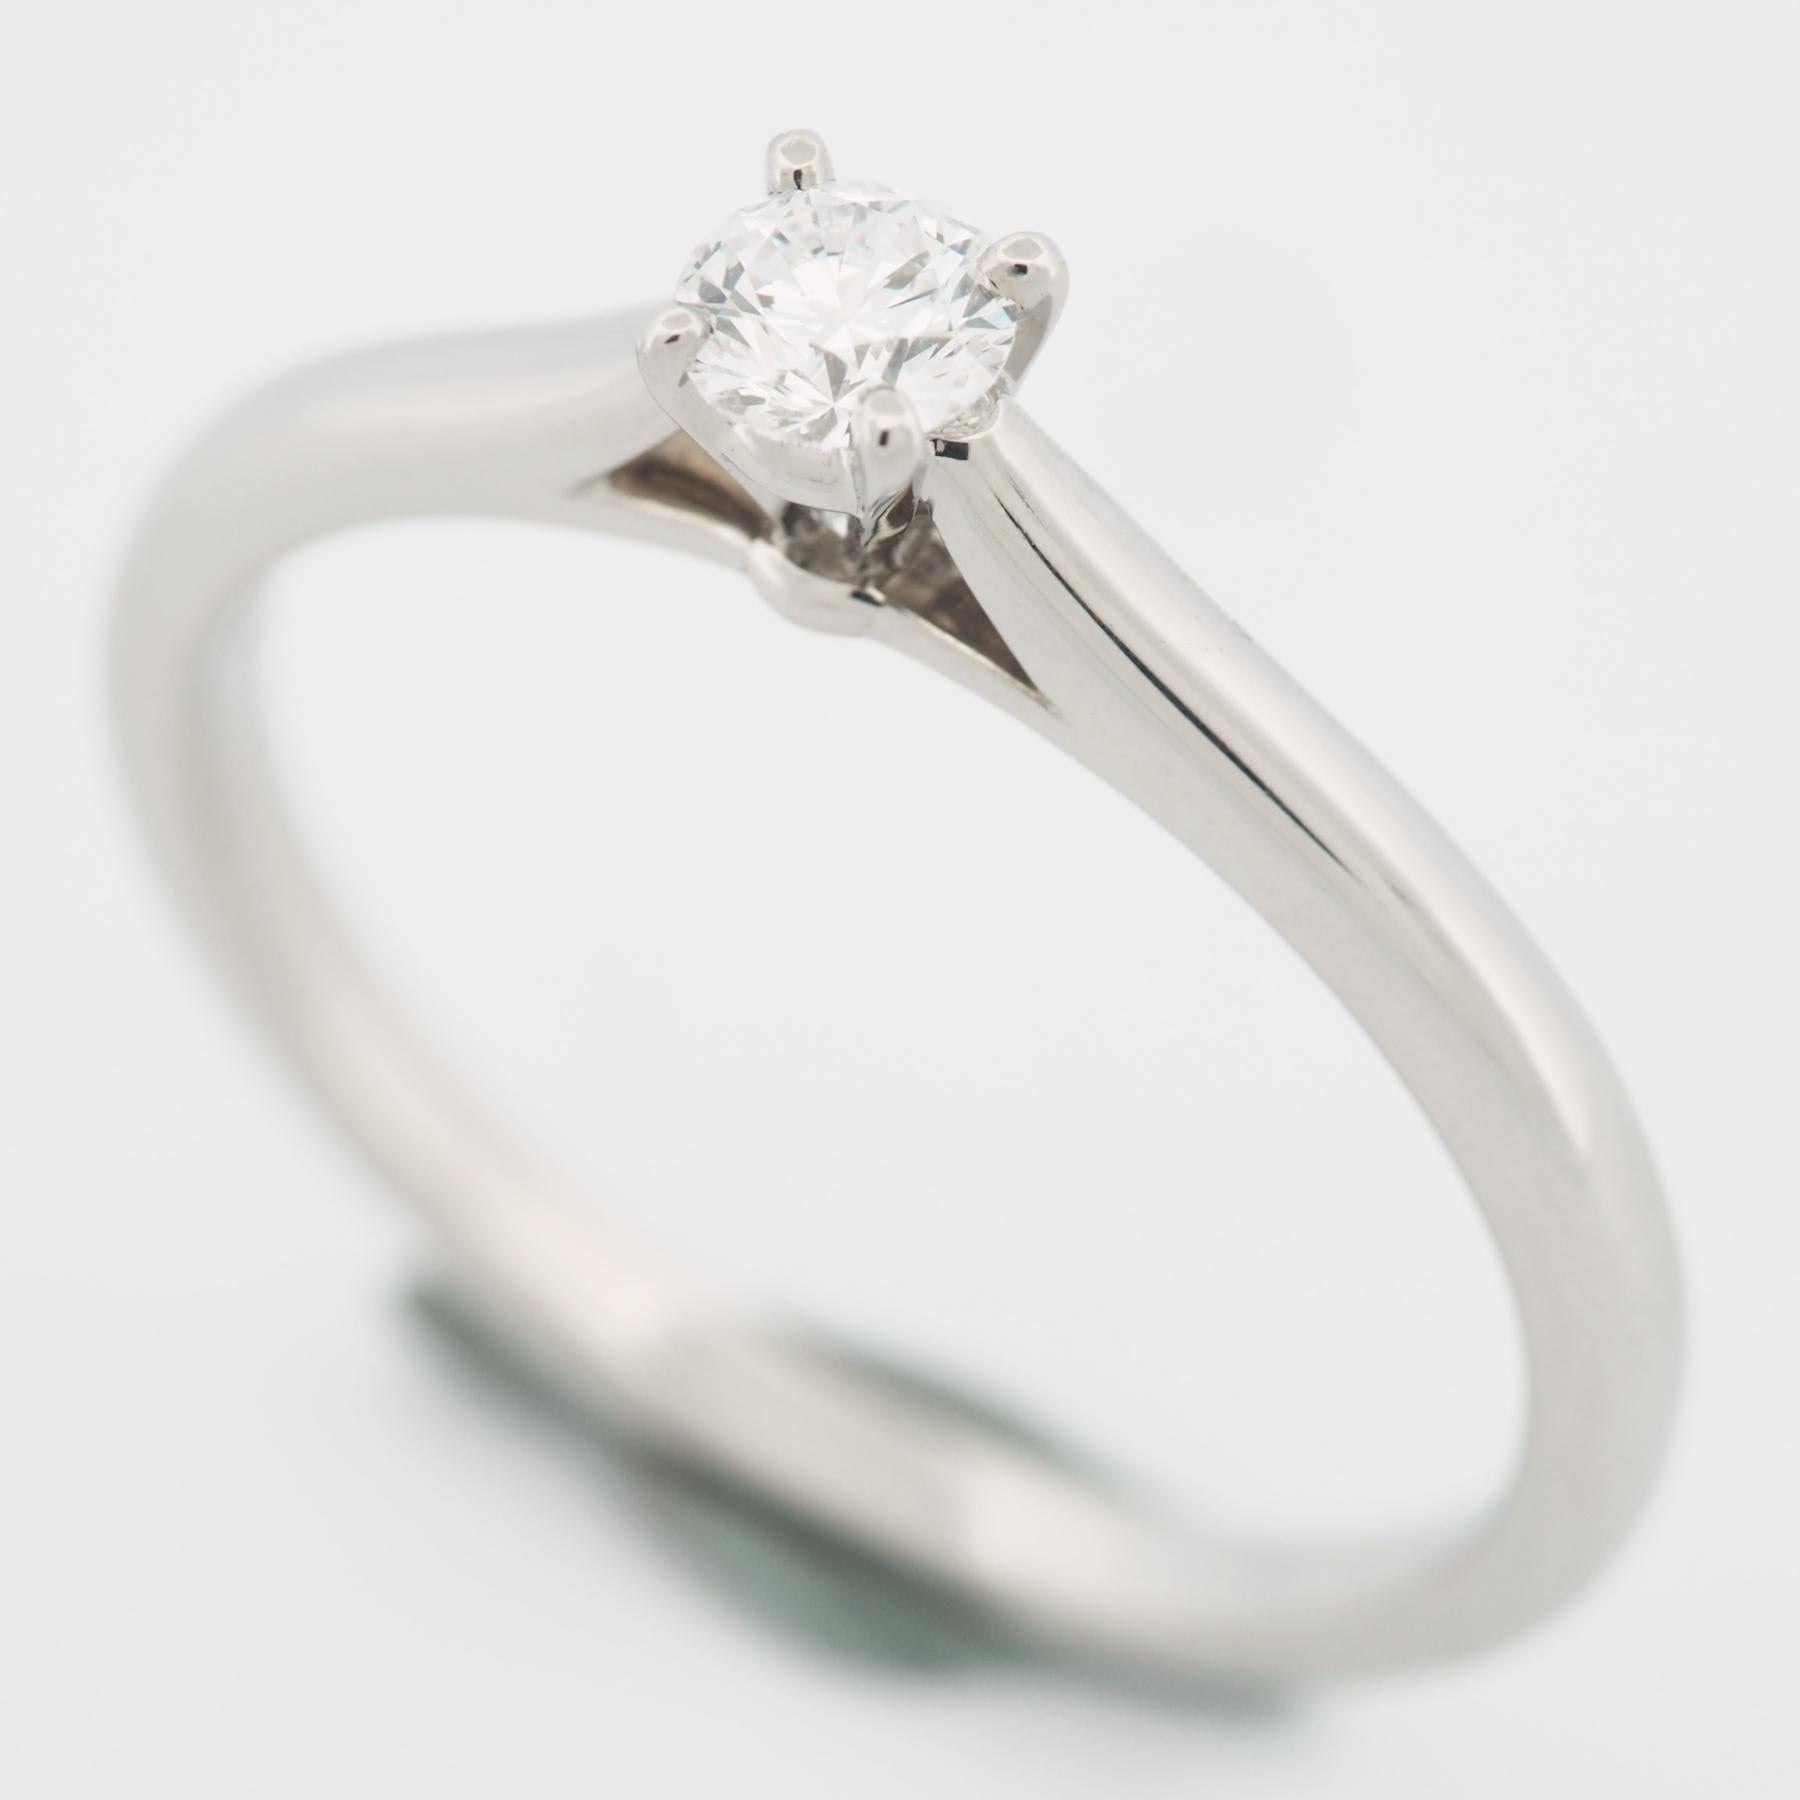 Item: Authentic Cartier 1895 Diamond Solitaire Ring
Stones: Diamond (0.24ct)
Color: D
Clarity:VVS2
Polish: Excellent
Symmetry: Excellent
Fluorescence: Faint
Metal: Platinum 950
Ring Size: 58 US SIZE 8.25 UK SIZE Q
Internal Diameter: 18.45